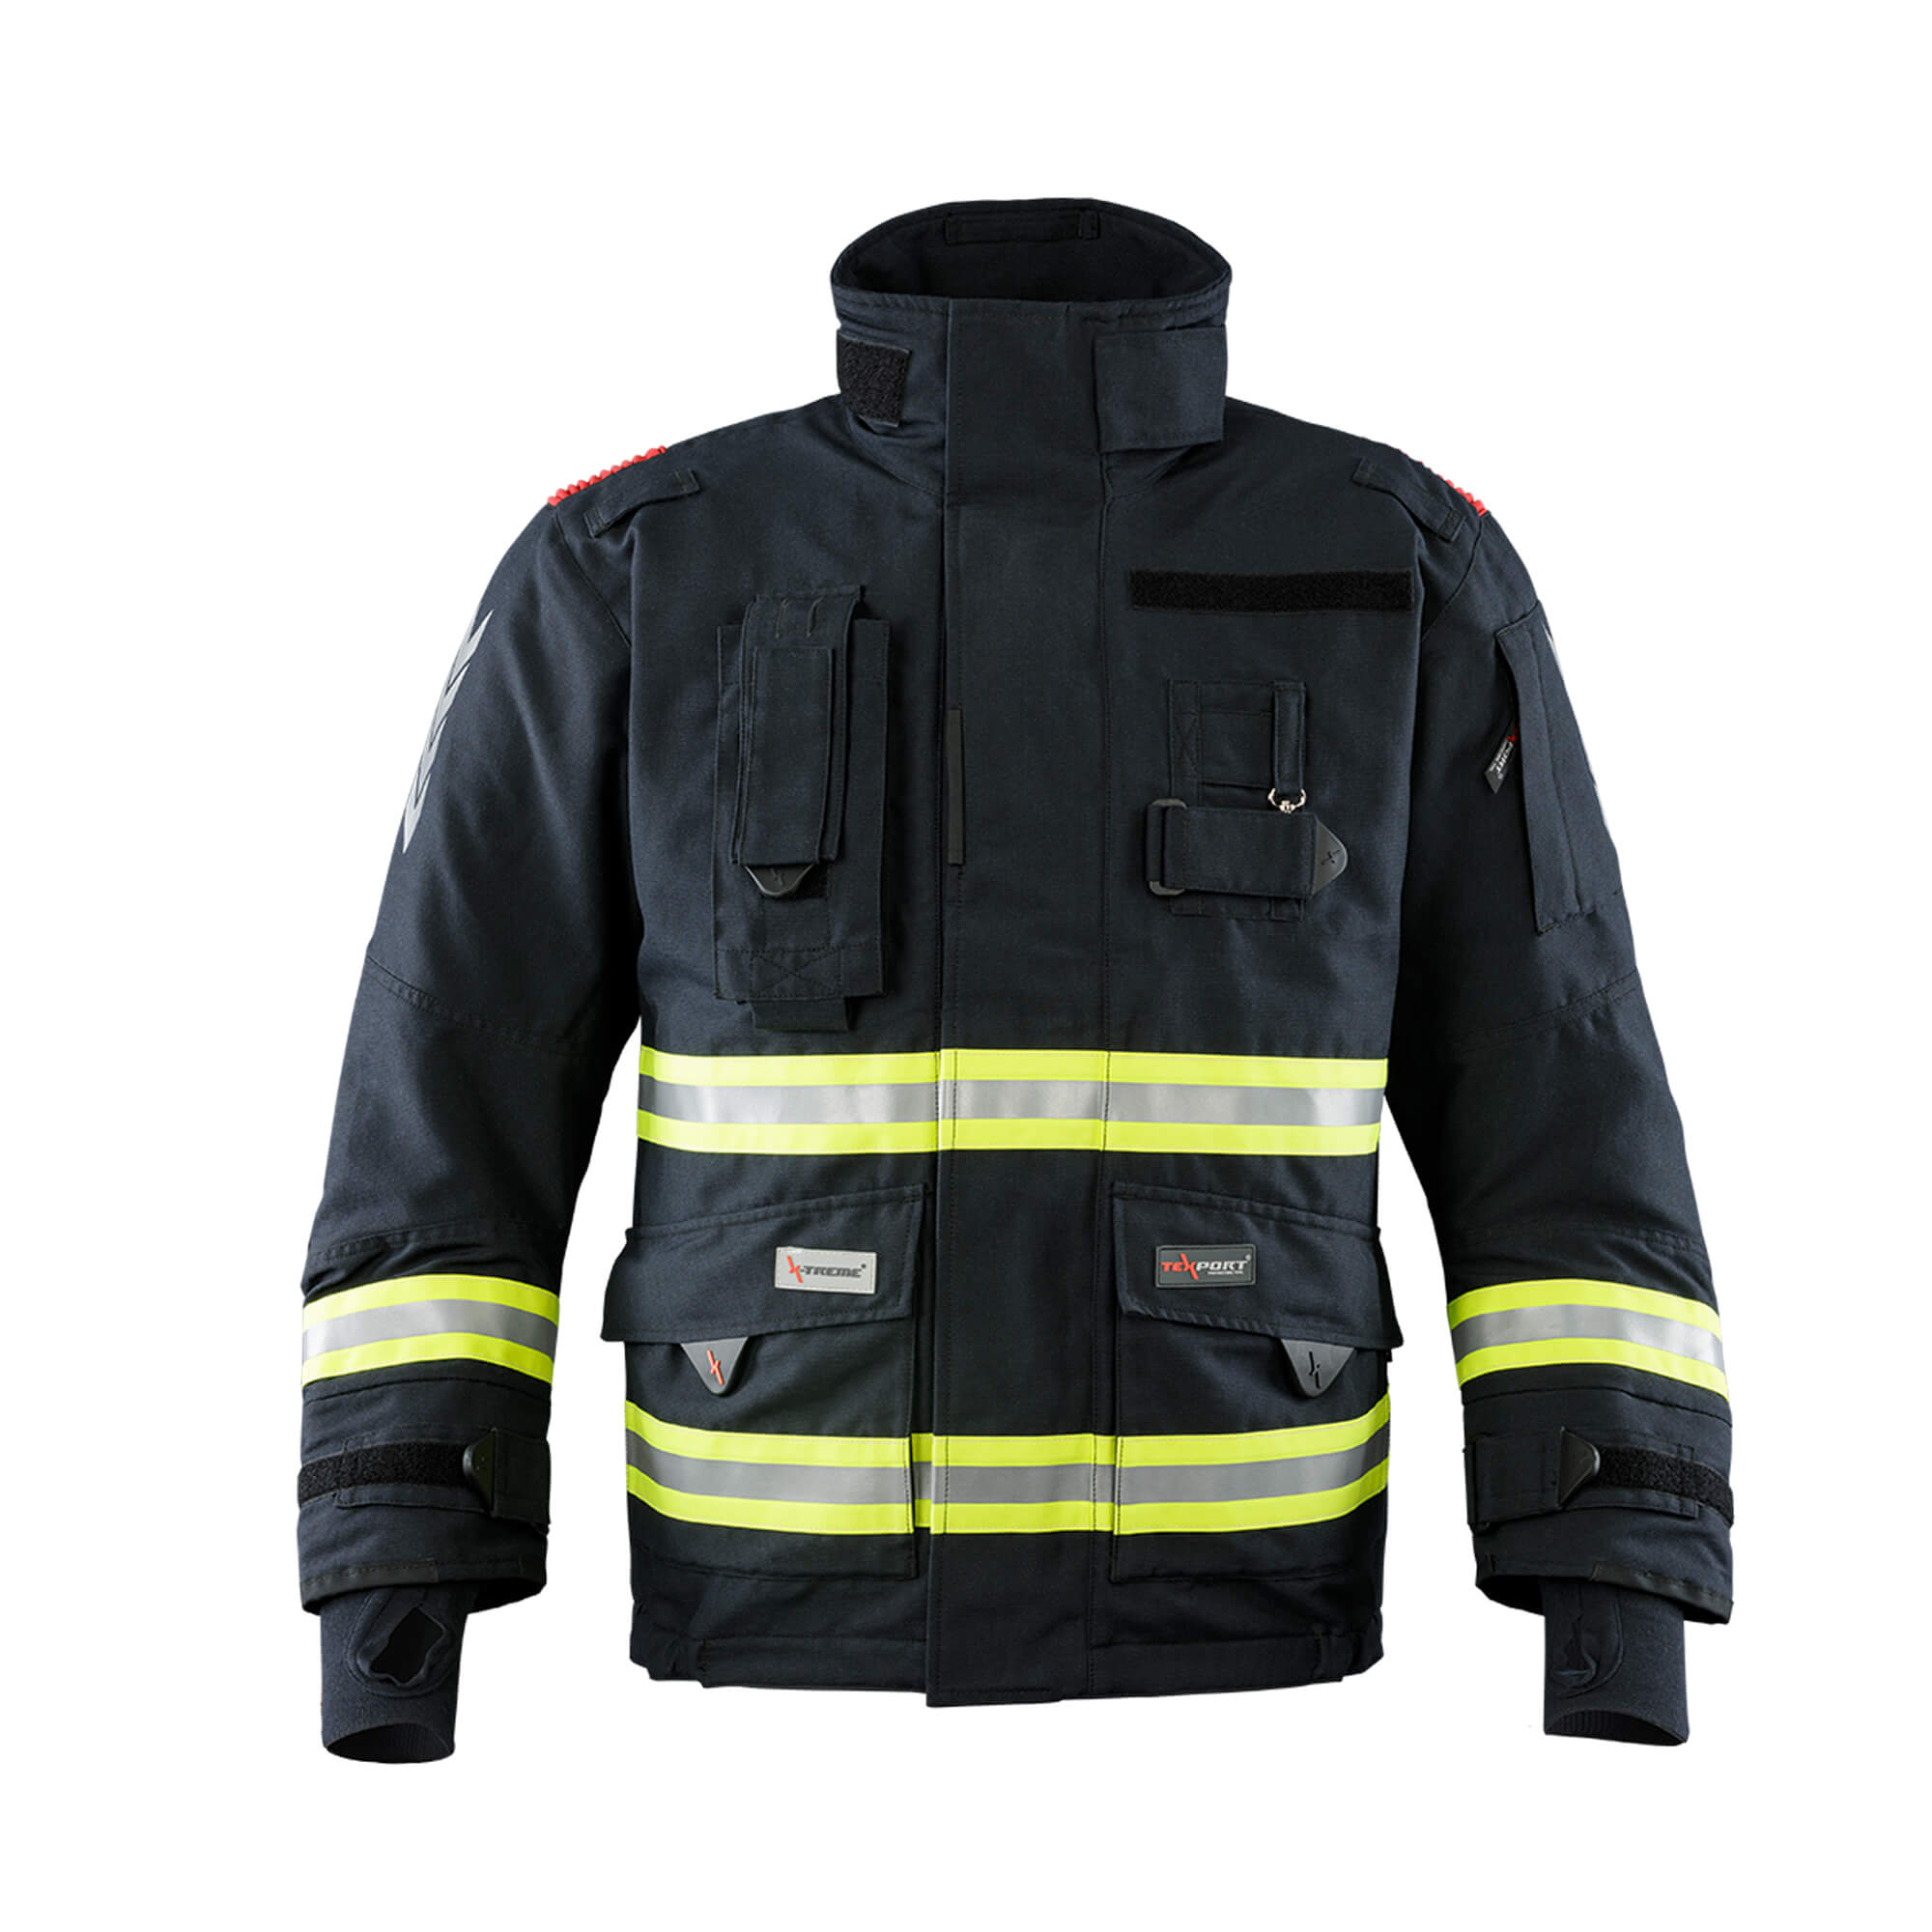 Interventno vatrogasno odijelo Texport Fire Stretch